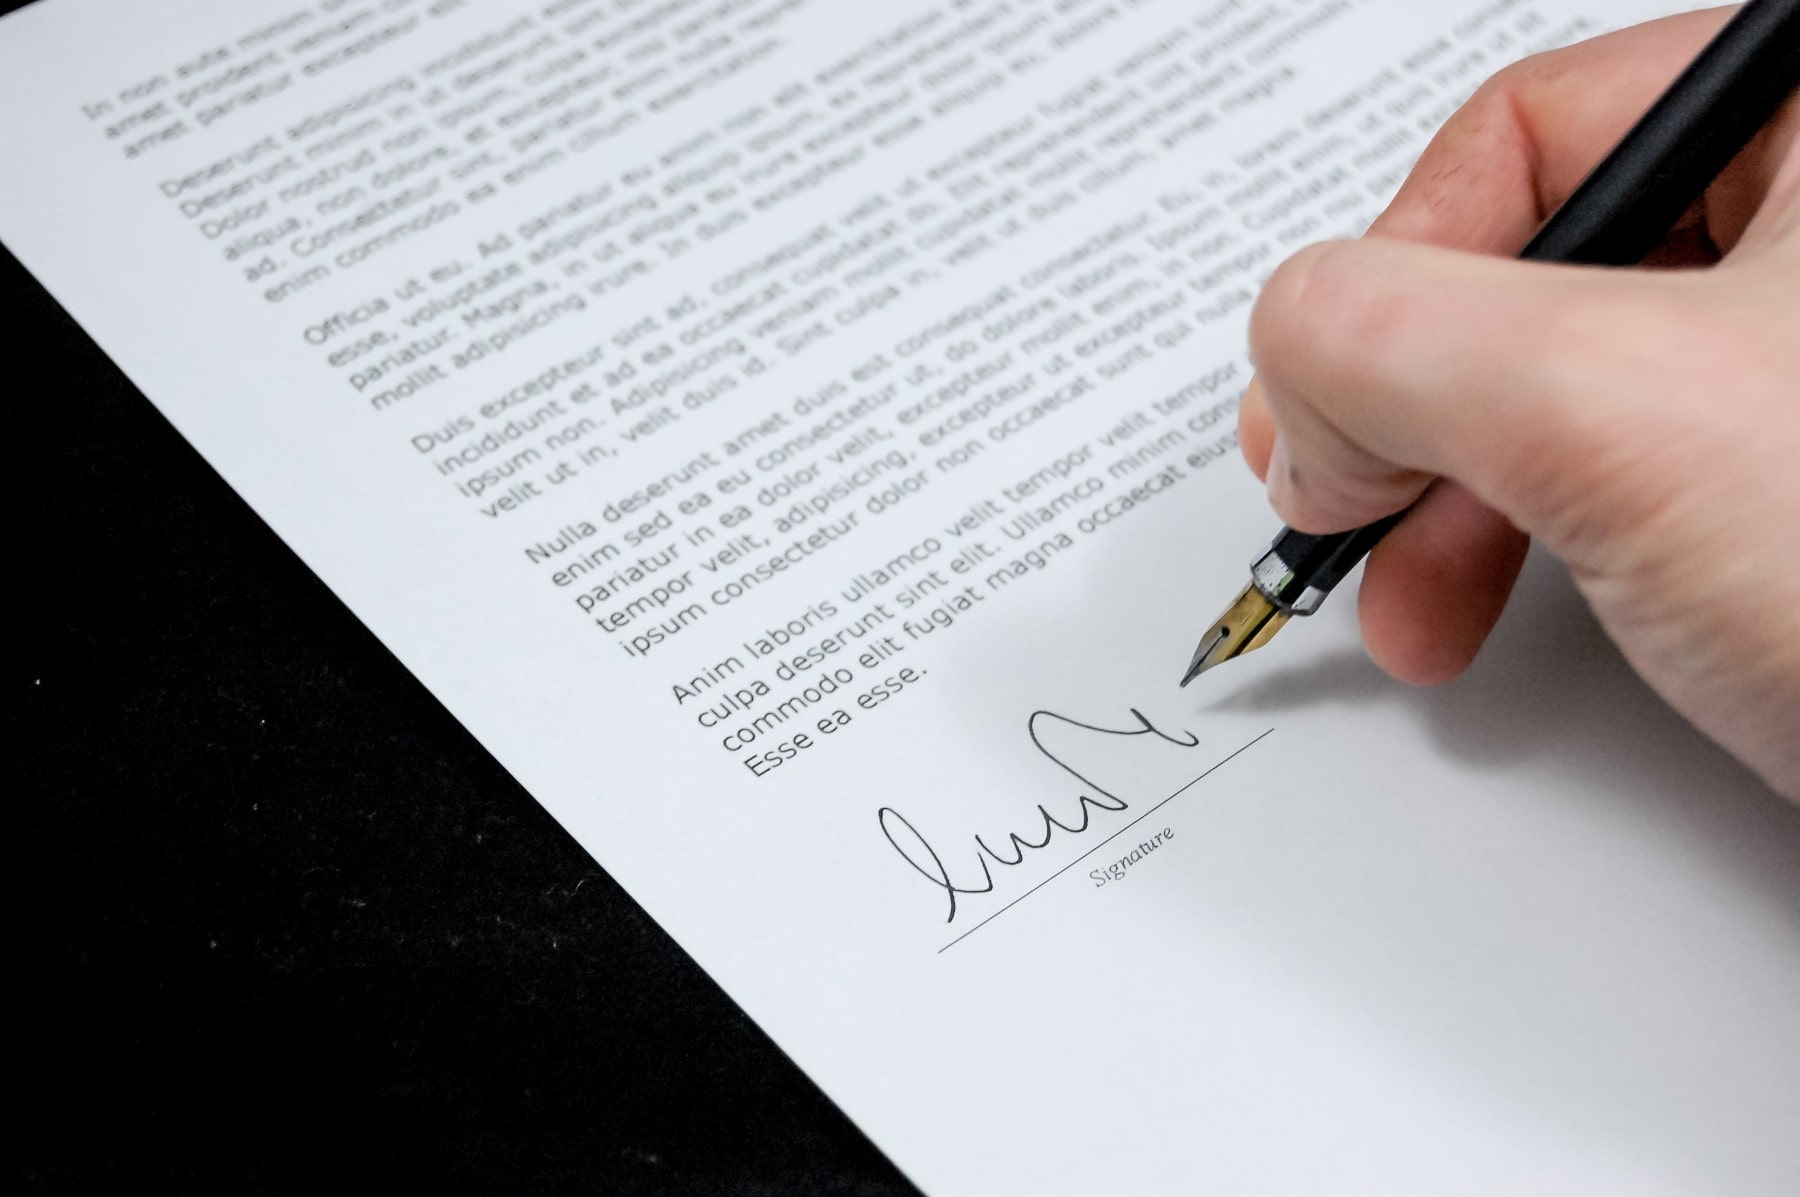 Una persona firma un documento con una pluma. El documento hace referencia a una licencia.